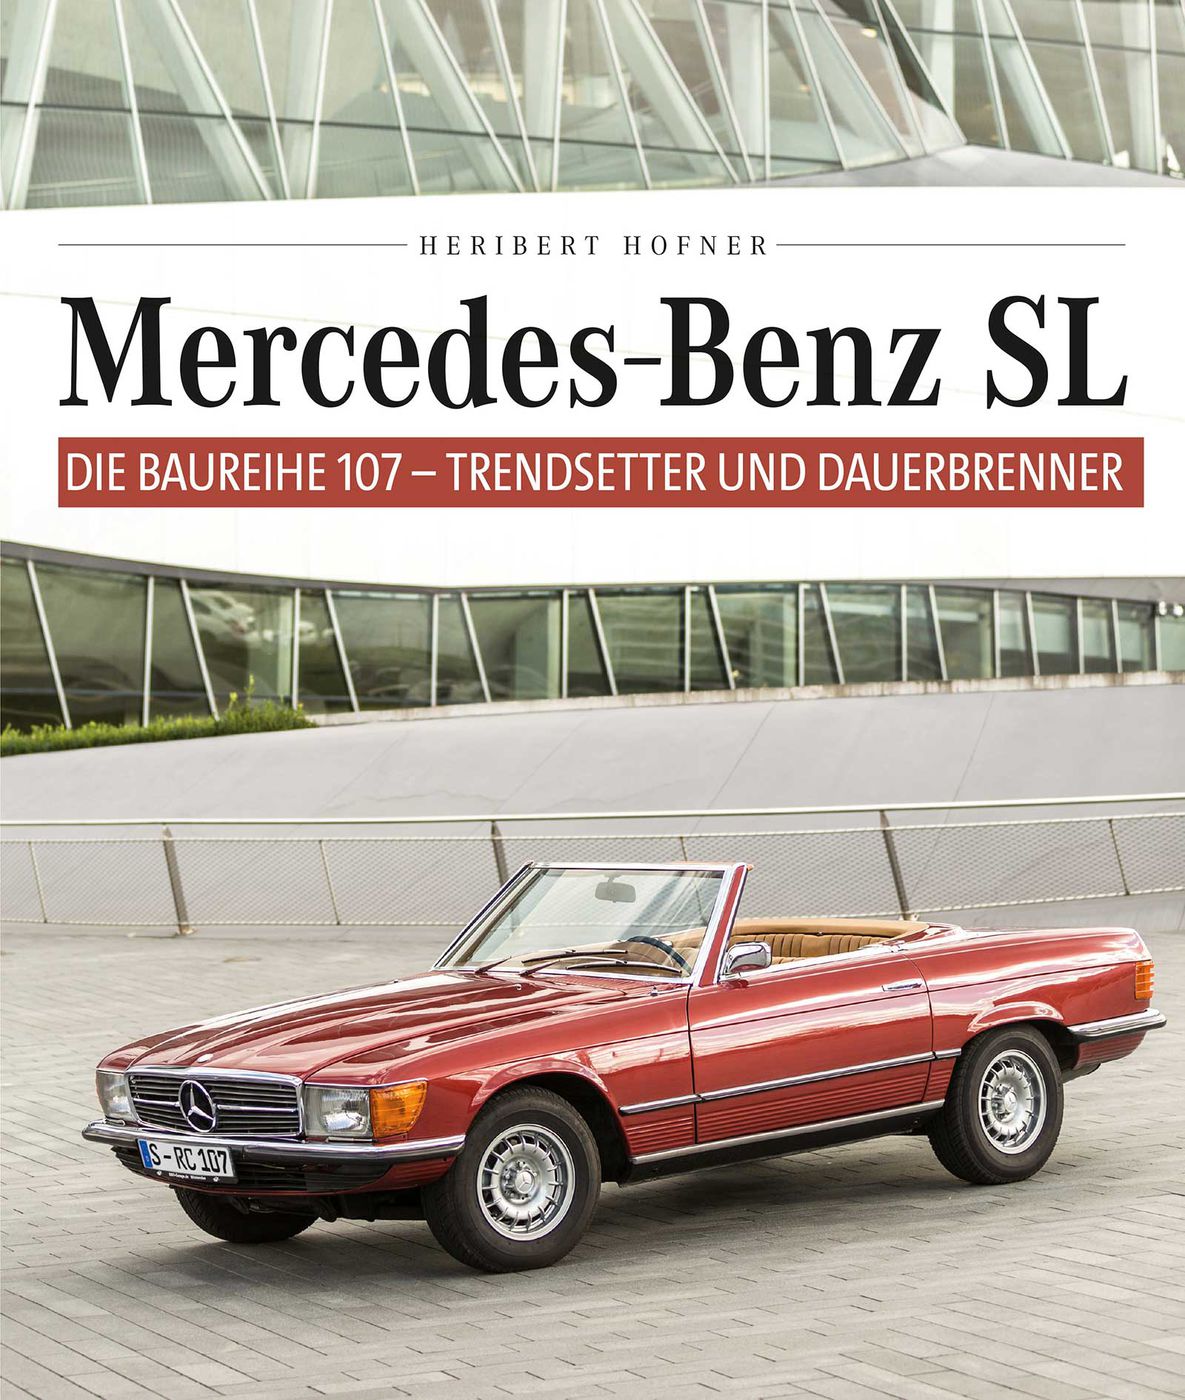 Mercedes Benz SL - Die Baureihe 107
Mercedes Benz SL - Die Baure